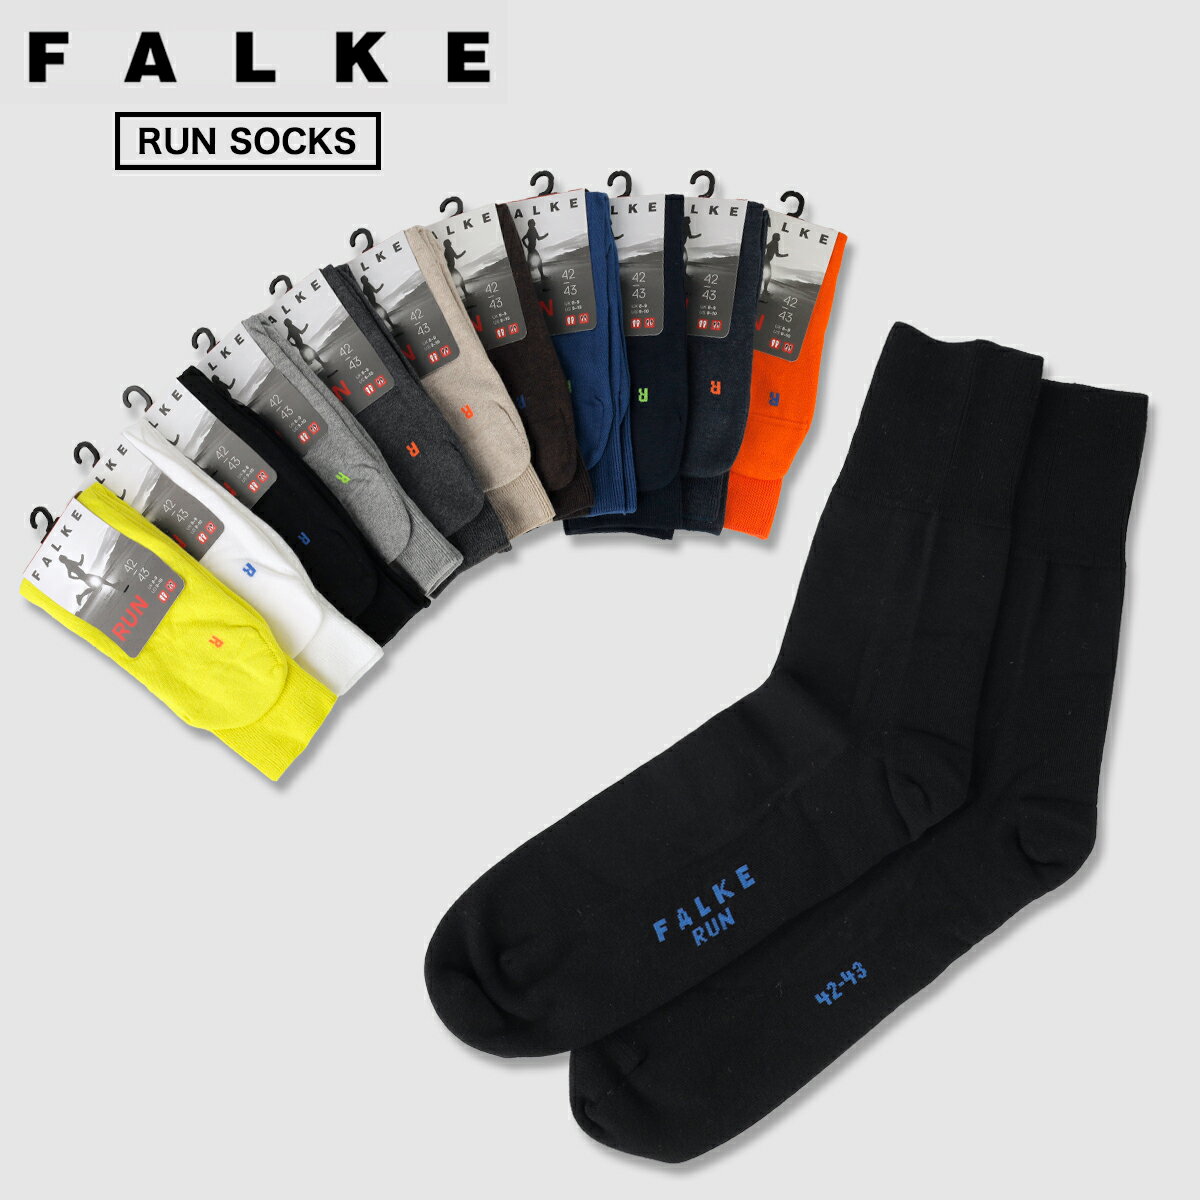 ファルケ メンズ FALKE RUN SOCKS ファルケ ラン ソックス メンズ レディース 靴下 16605 【追跡可能メール便・日時指定不可】